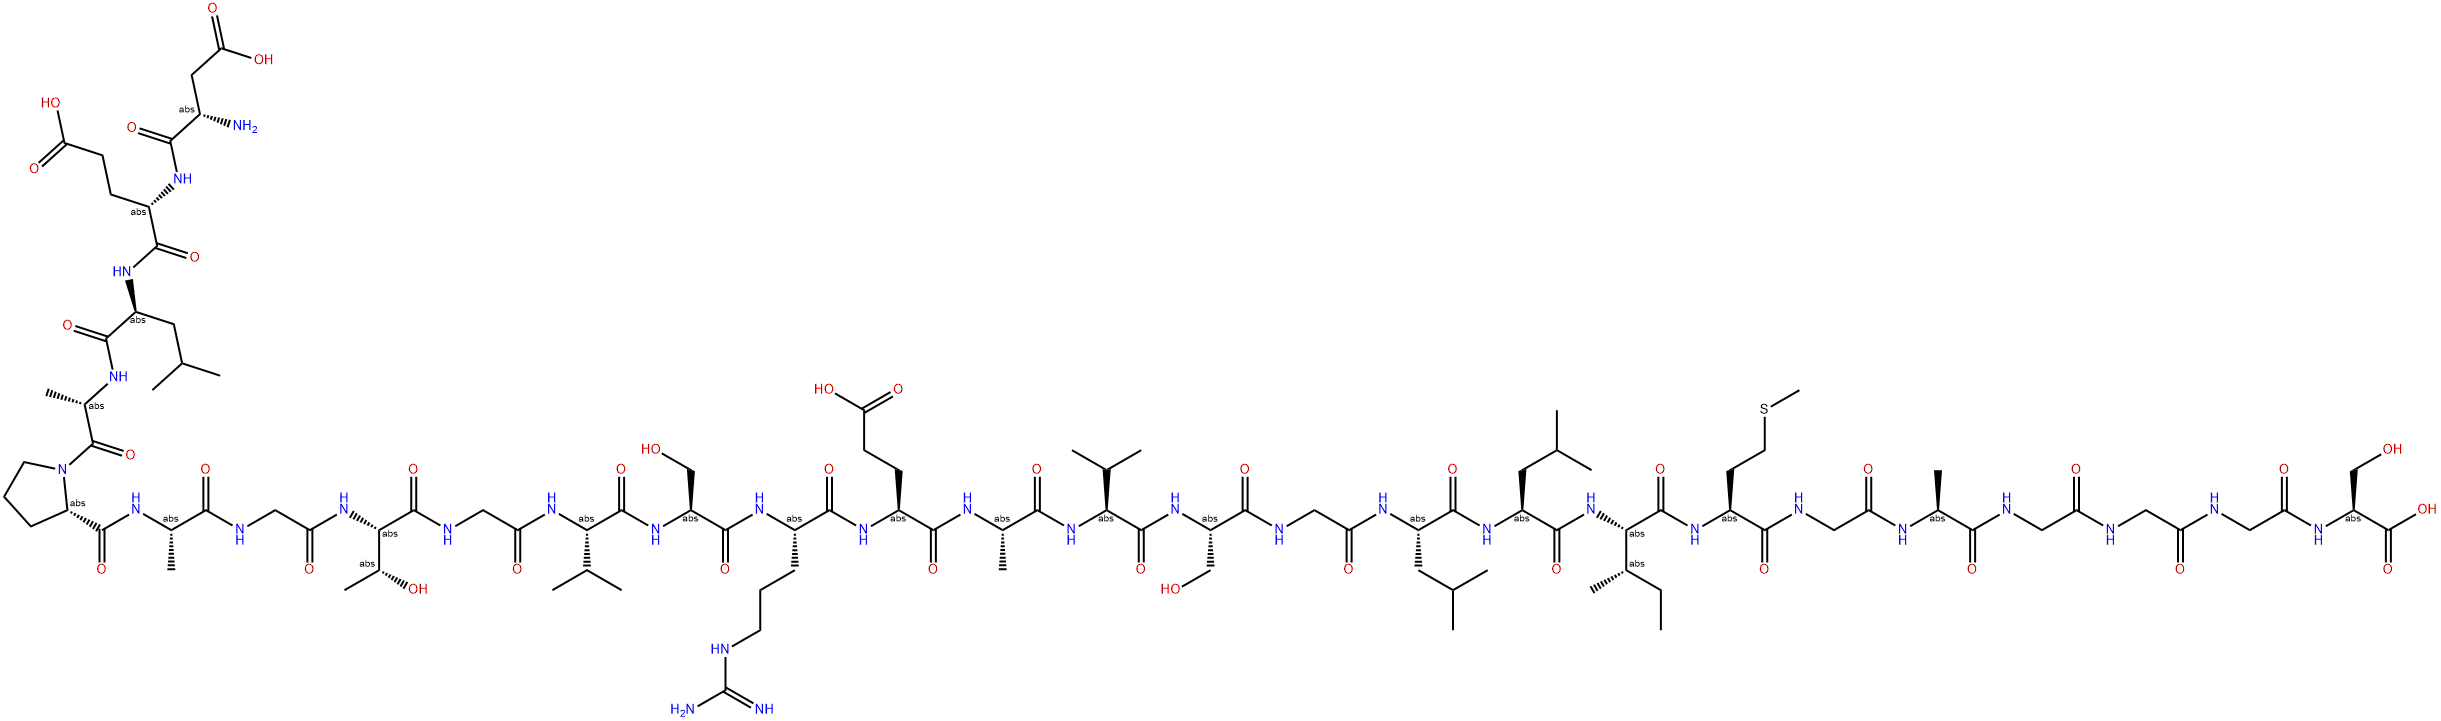 淀粉样蛋白 APL1β27 结构式